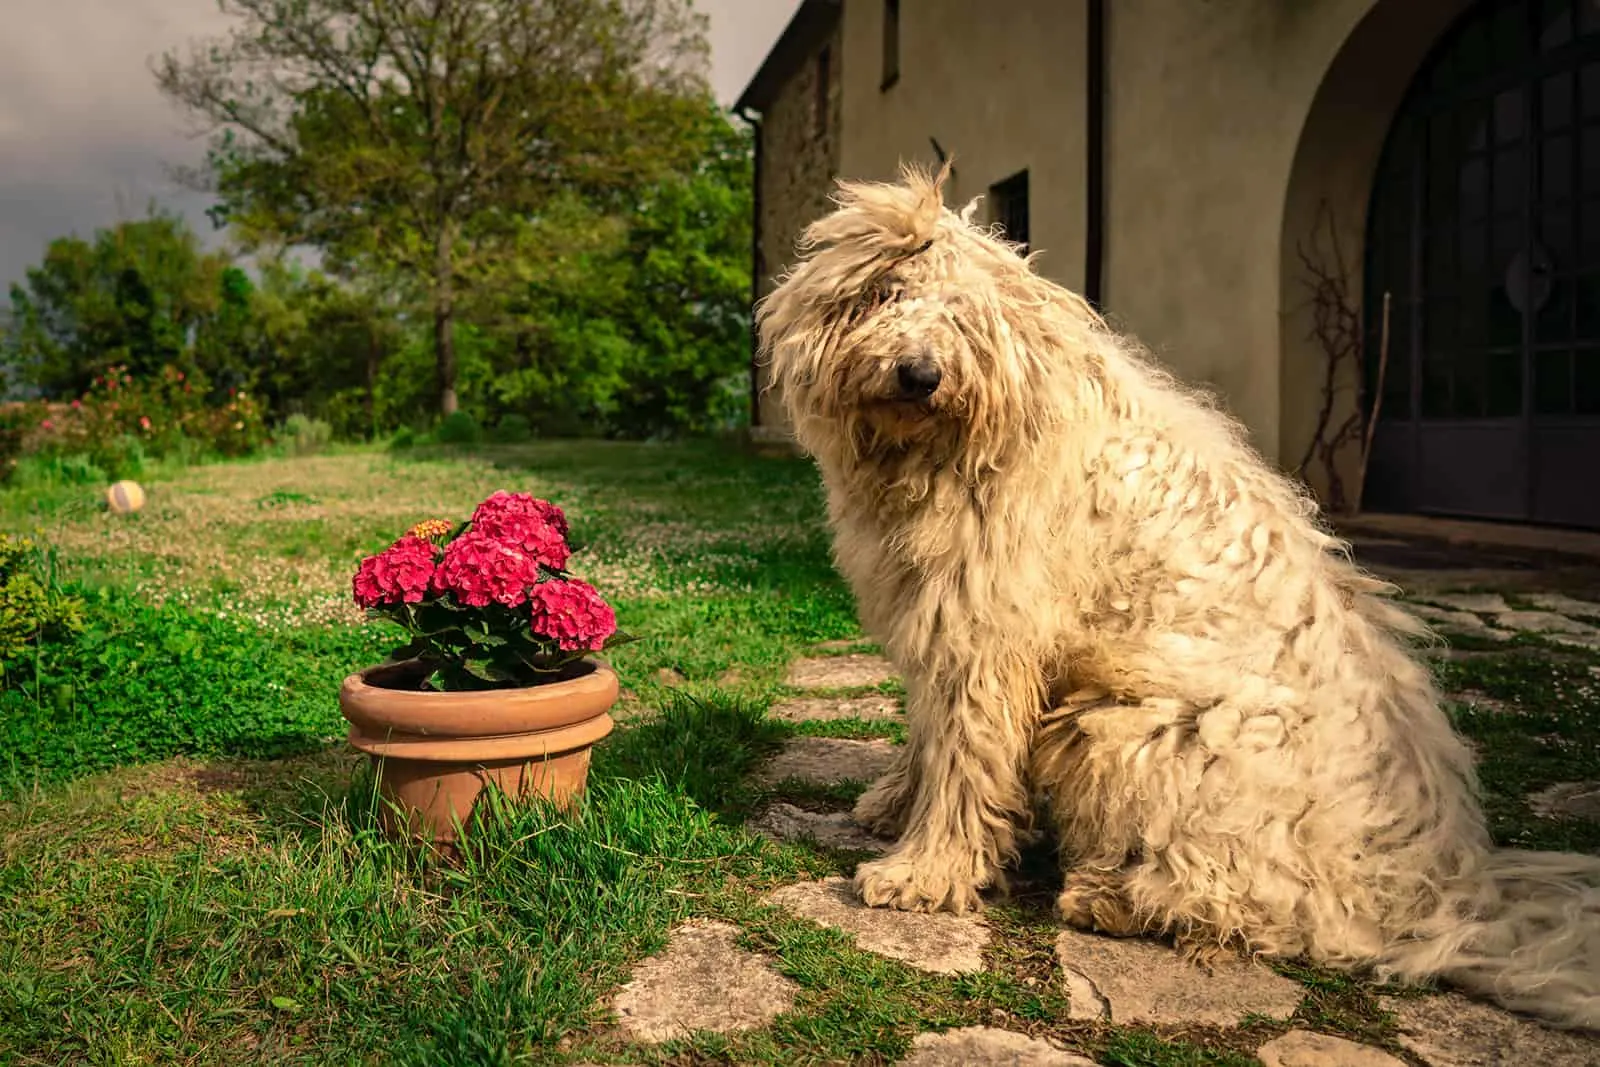 Big Komondor dog in the lawn